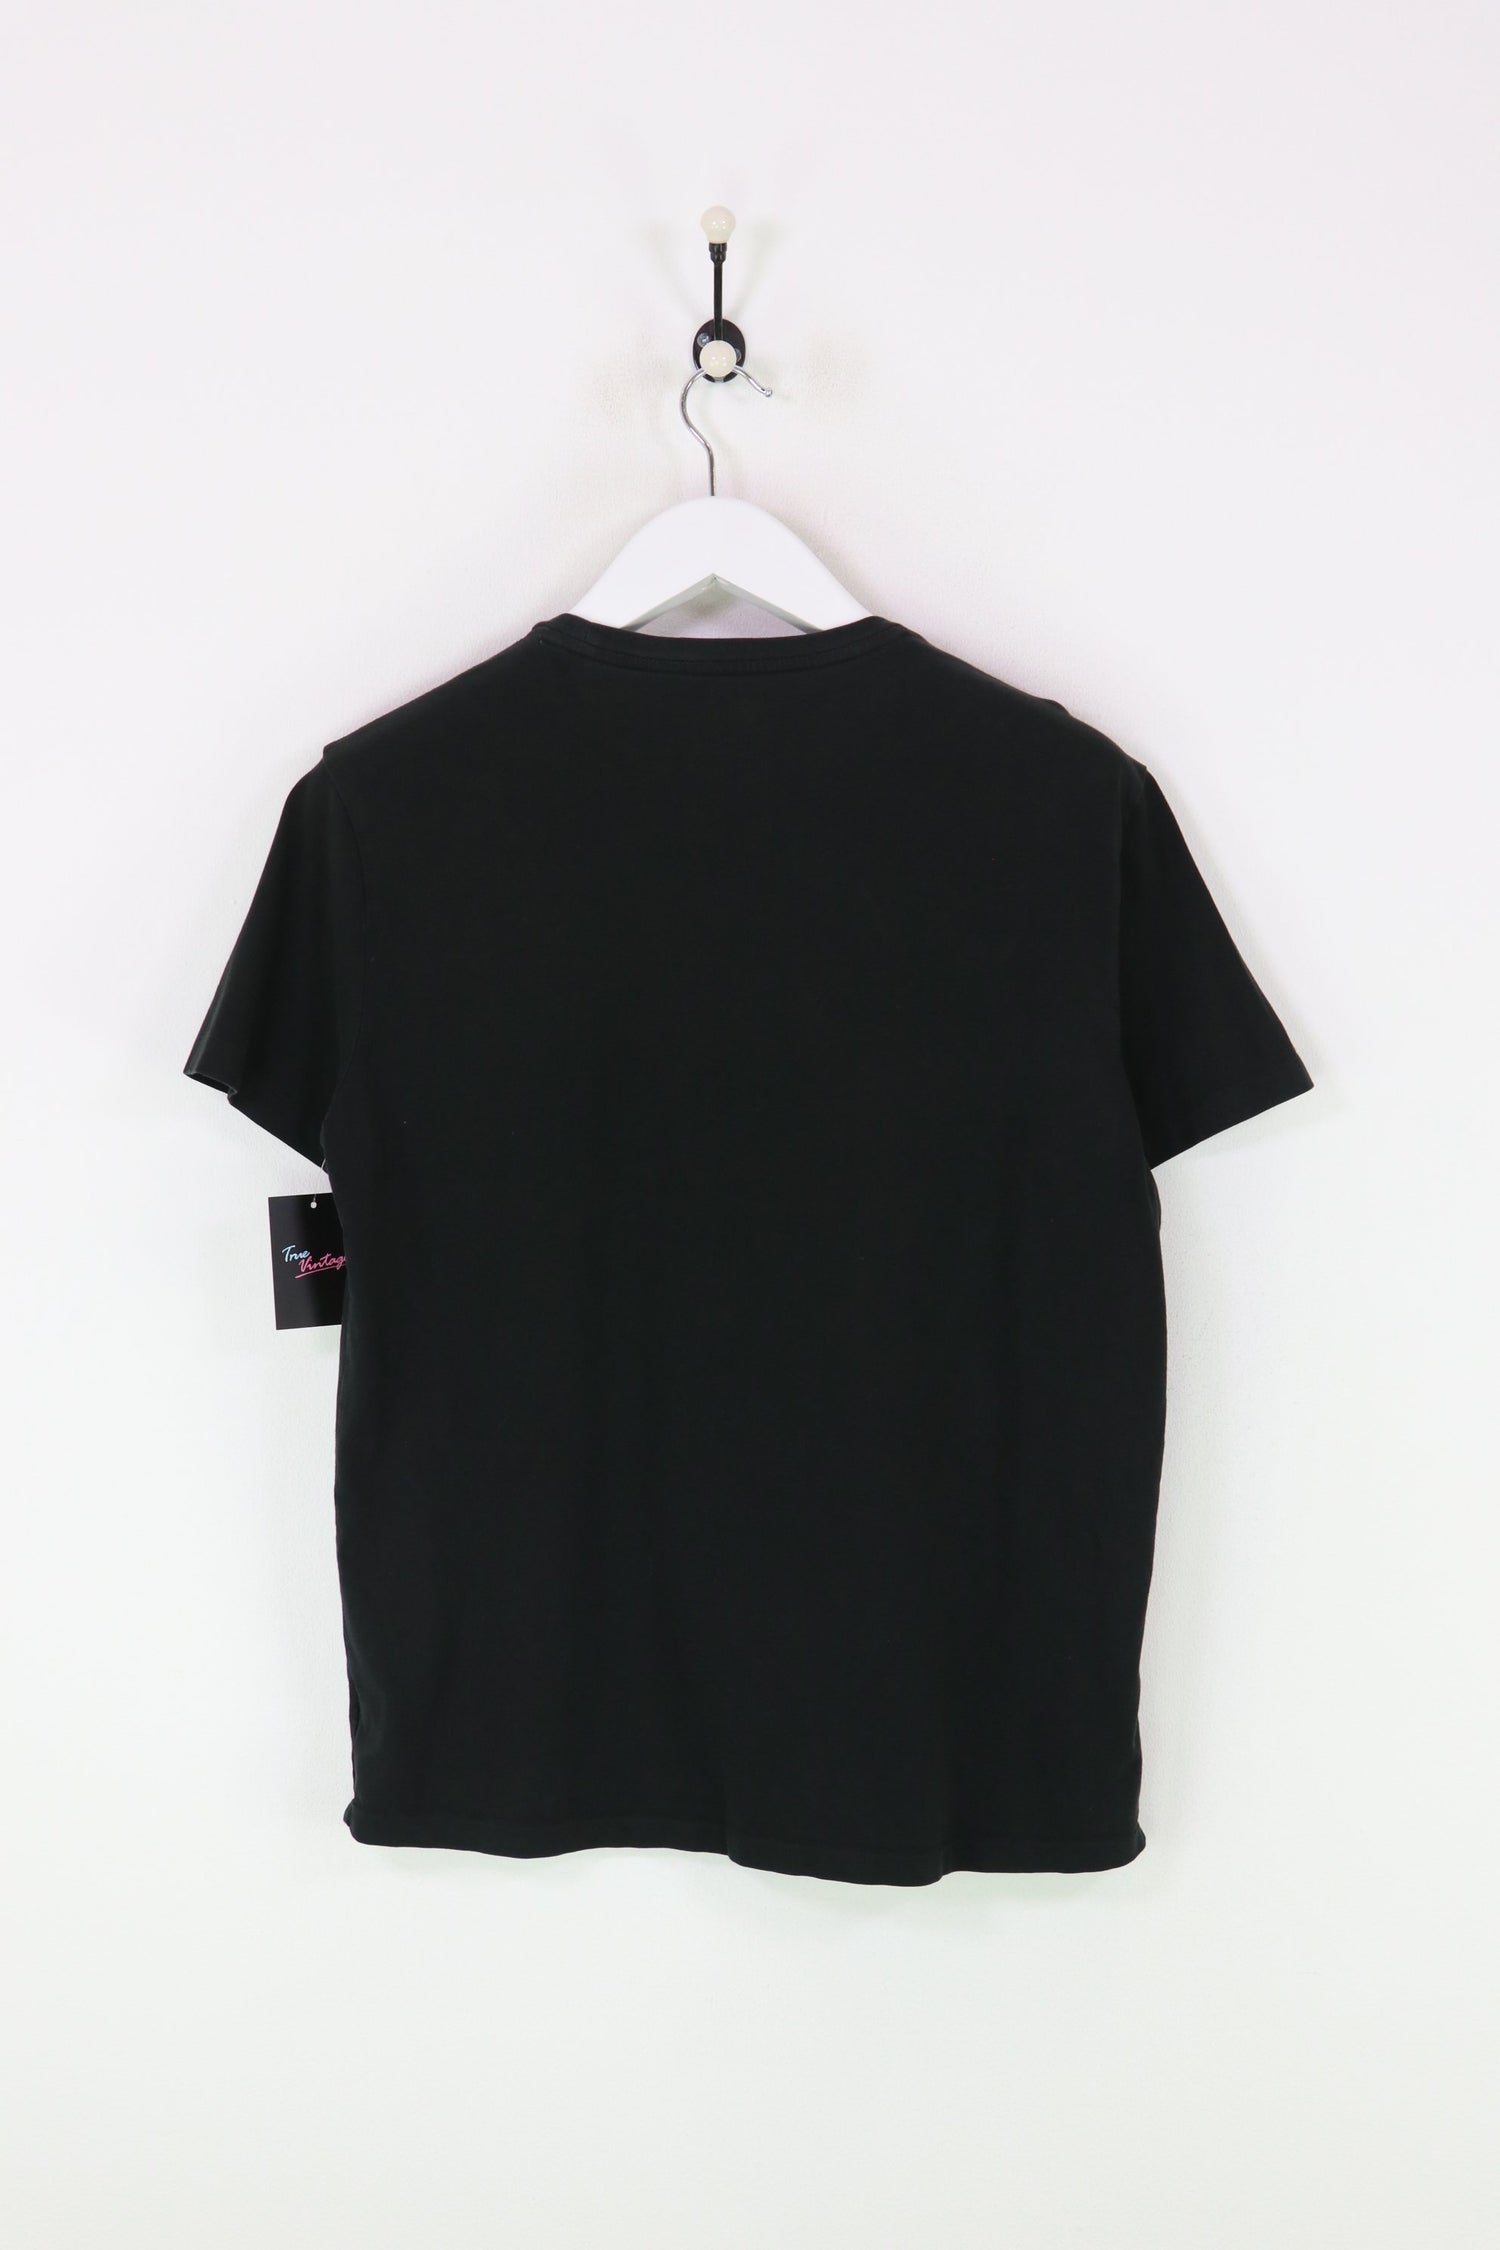 Ralph Lauren T-shirt Black Medium